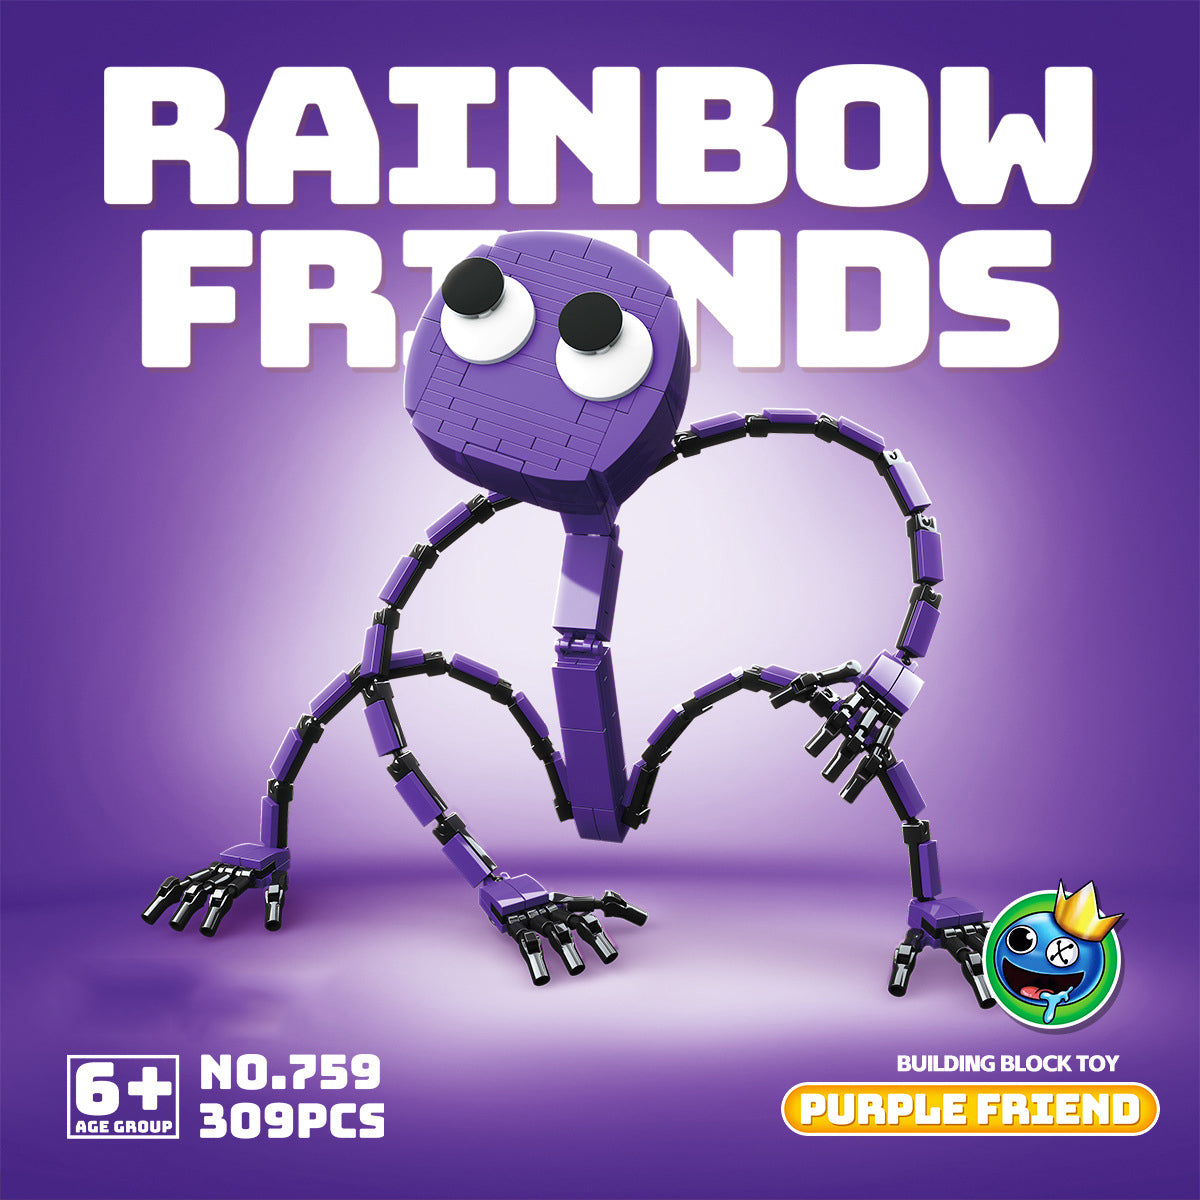 Rainbow Friends Plush Toys 4pcs – ipetoys